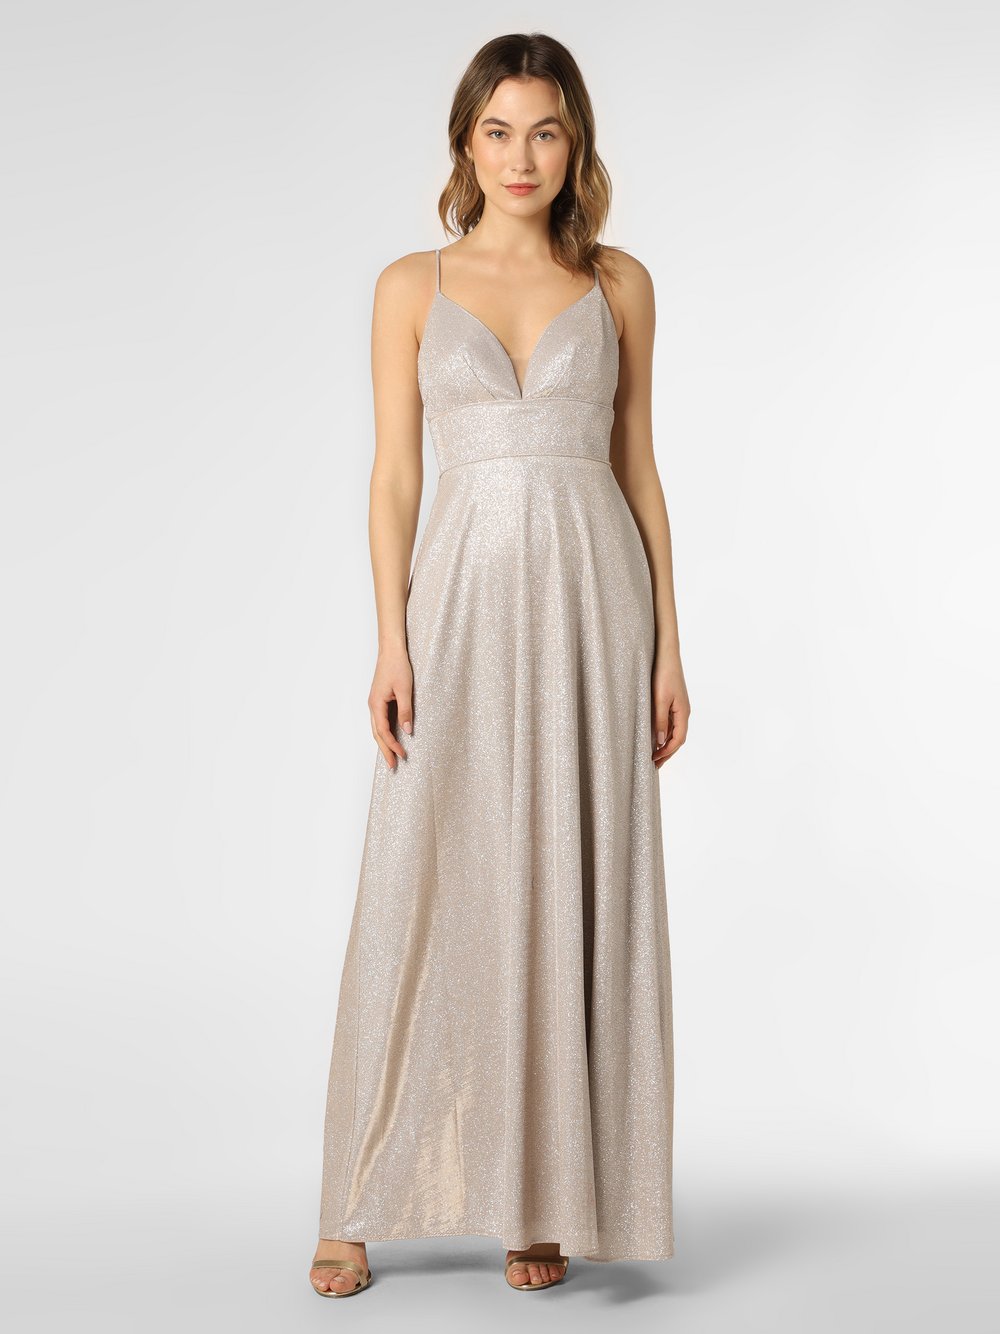 Unique - Damska sukienka wieczorowa, beżowy|srebrny|złoty